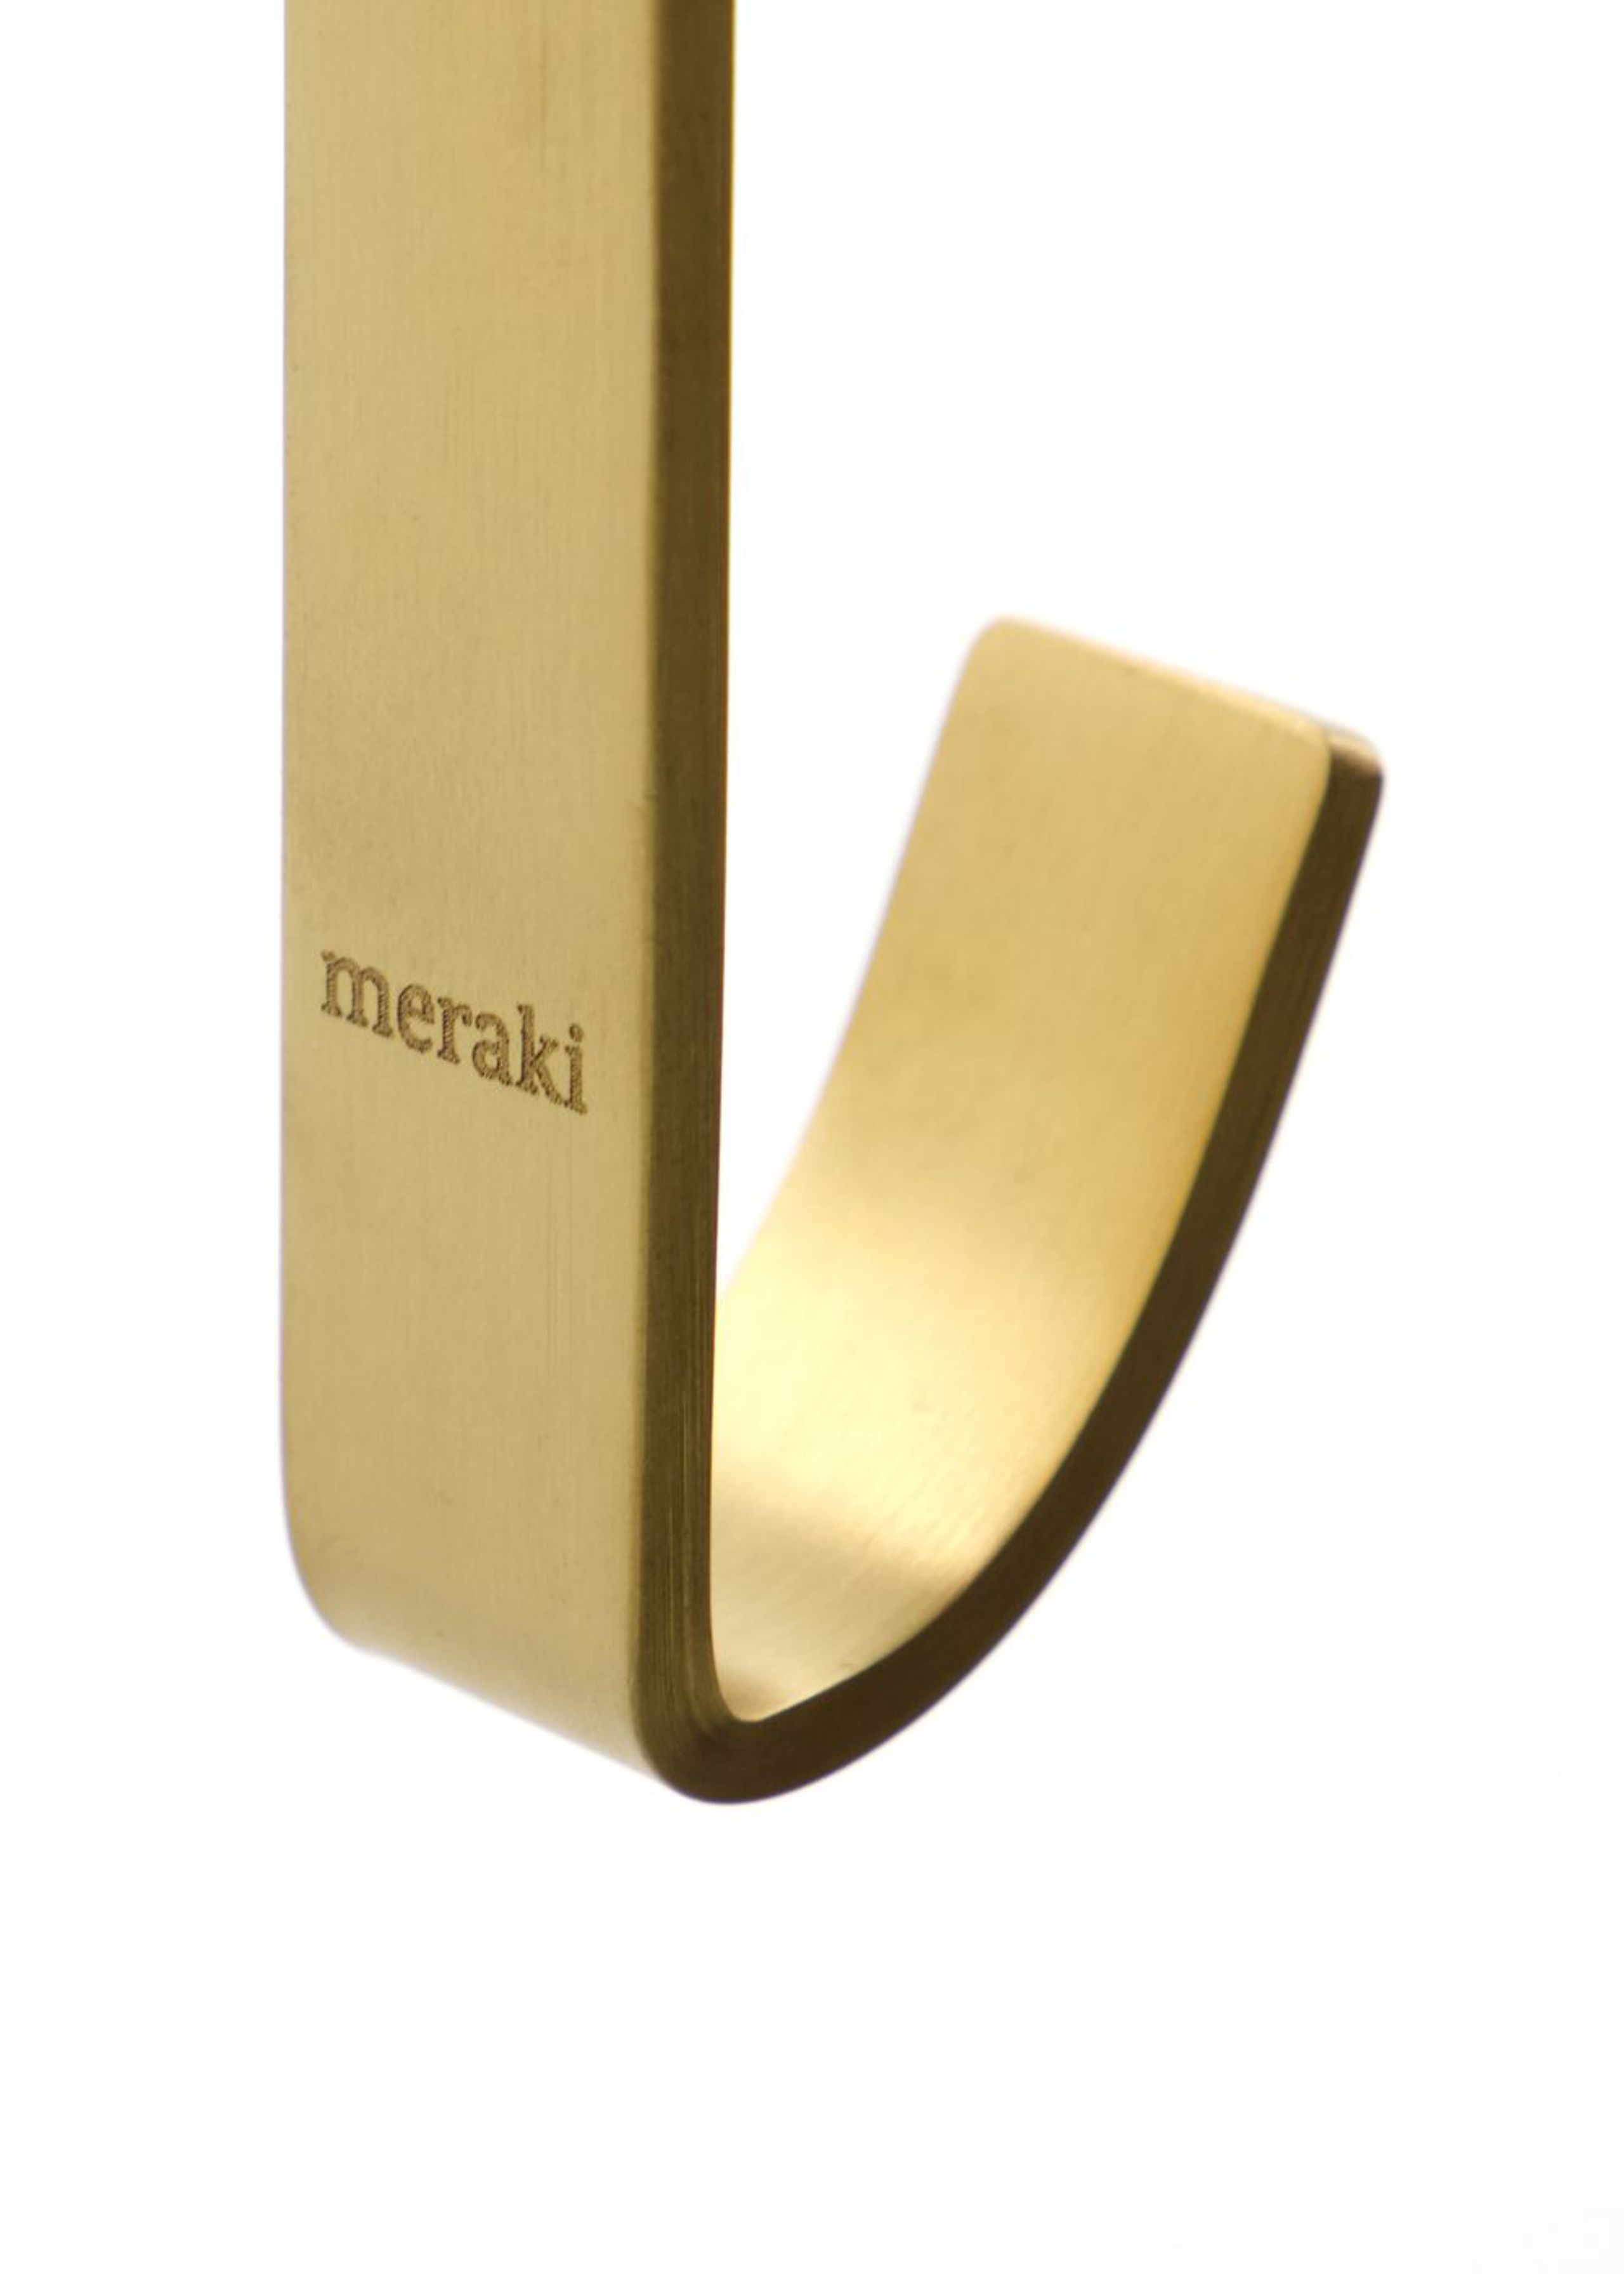 Meraki - Haken - Hook - Thapsus - Brushed brass finish